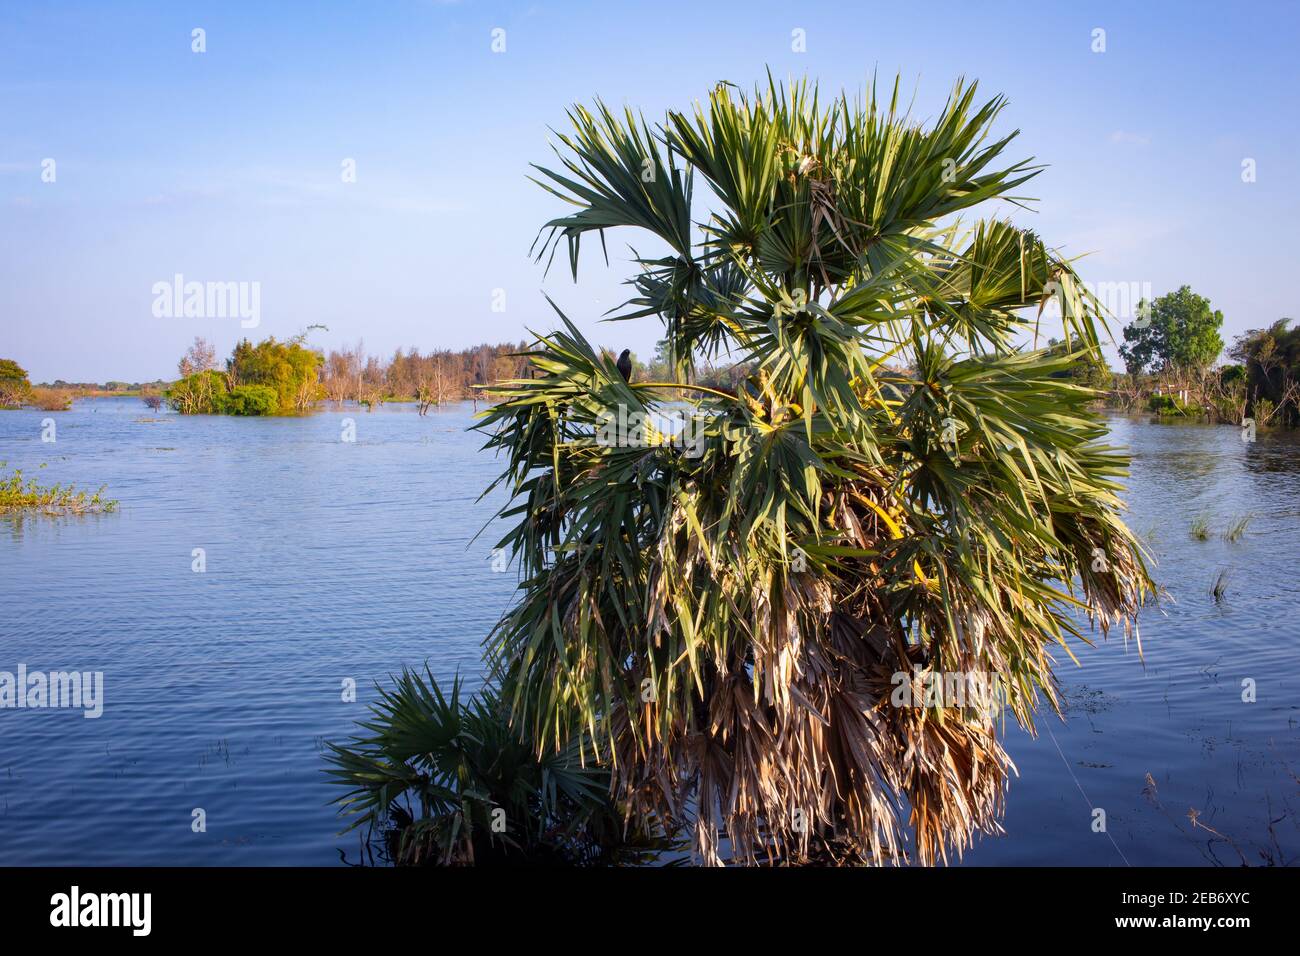 Vista delle palme di palmyra mezzo sommerso con le acque del fiume Palar, Tamil Nadu, India. Foto Stock